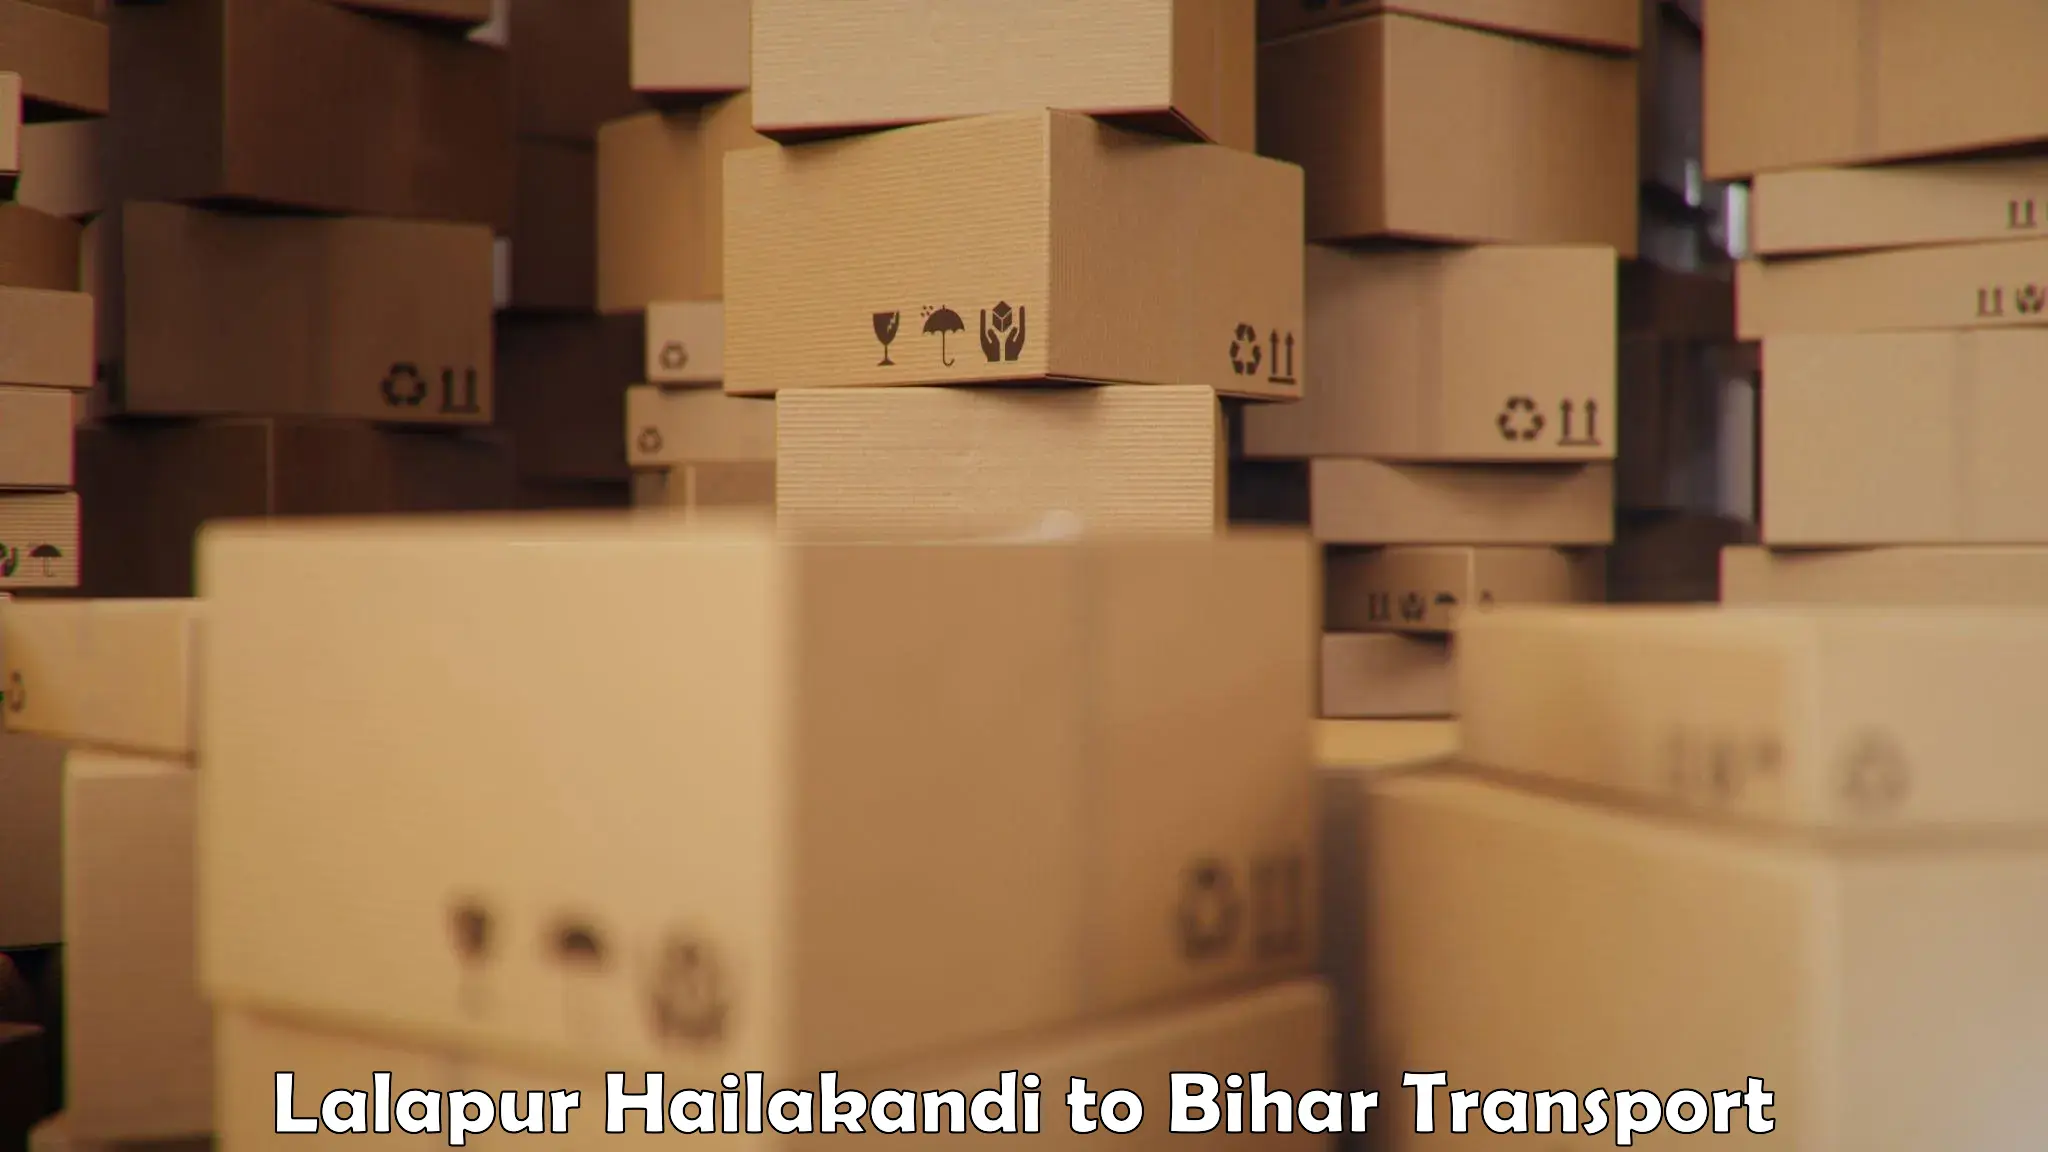 Goods delivery service Lalapur Hailakandi to Goh Aurangabad